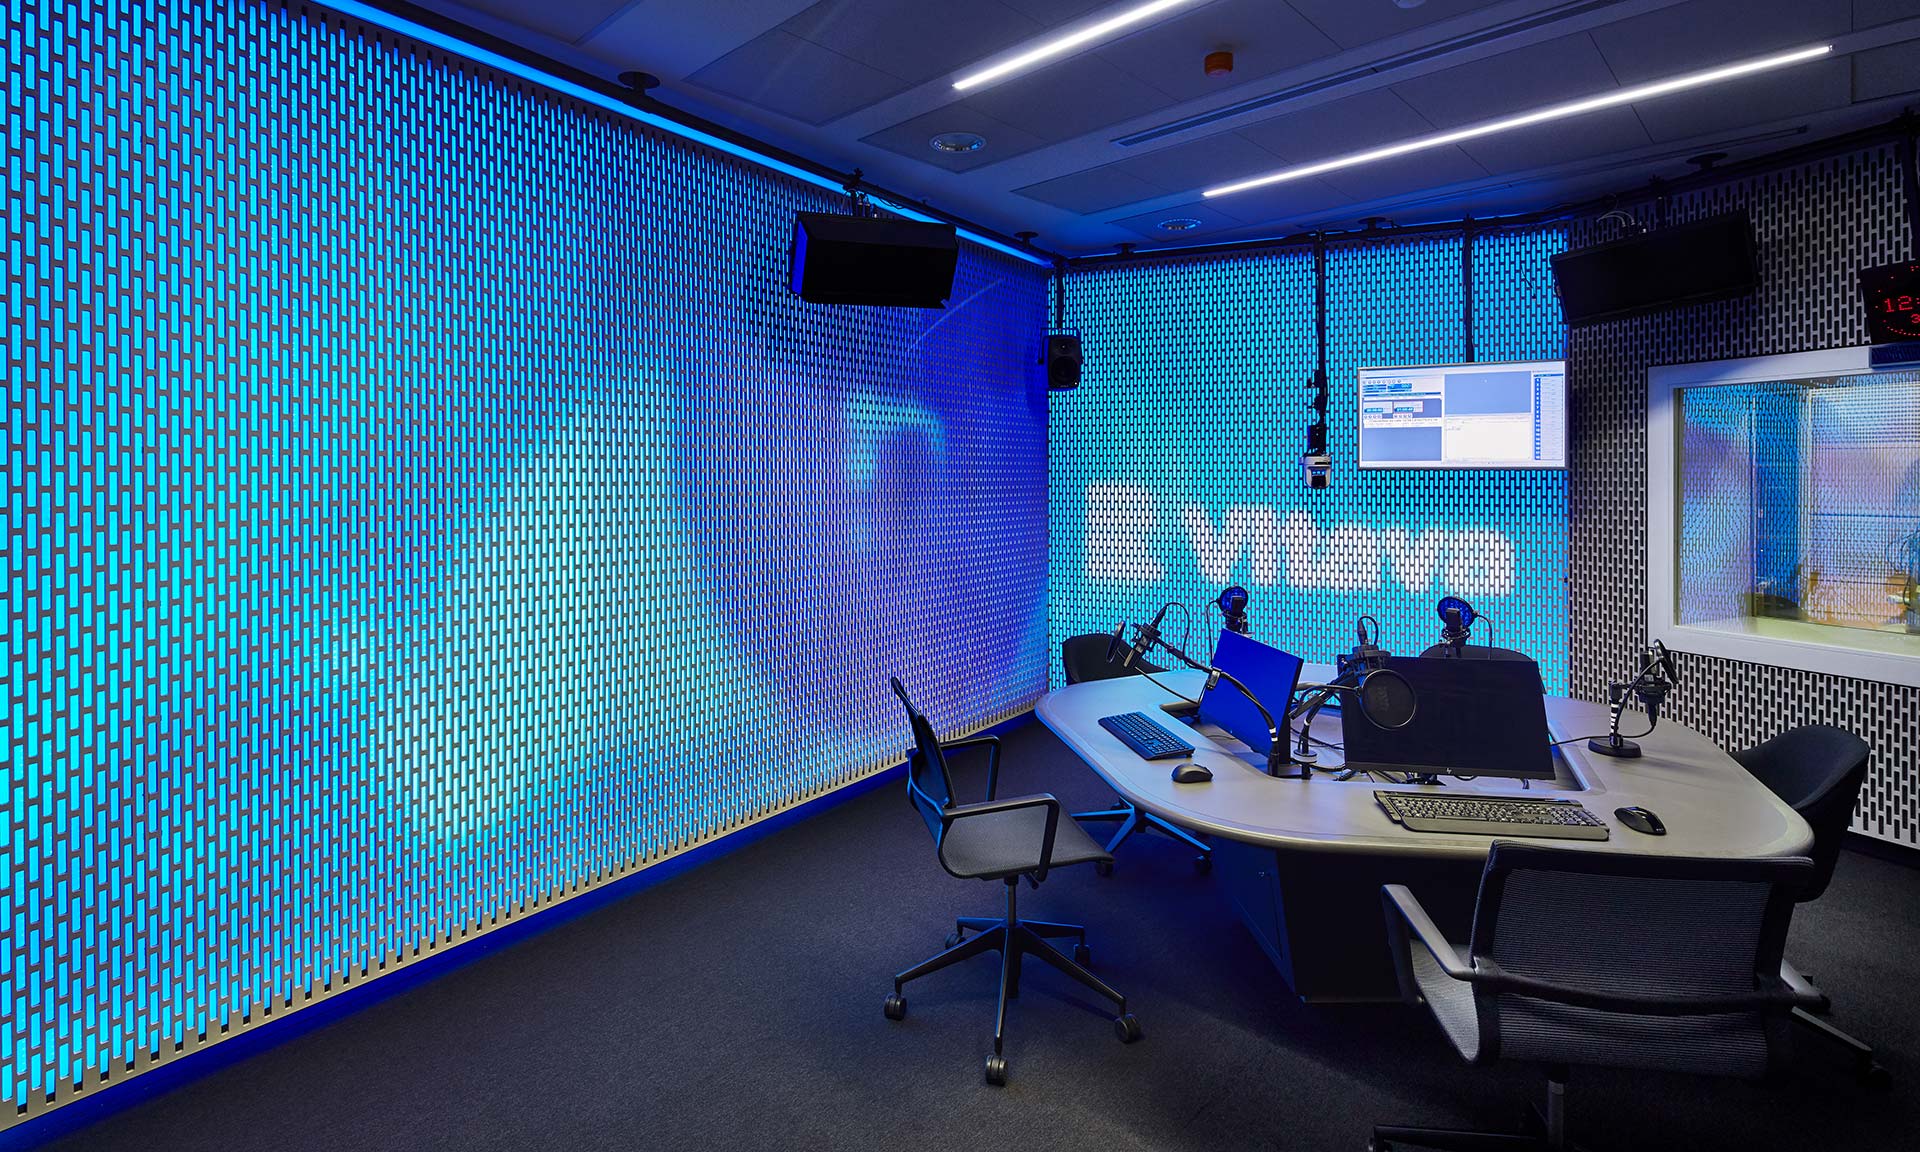 Czech Radio Vltava ha un moderno studio di discussione dotato di pareti luminose – DesignMag.cz